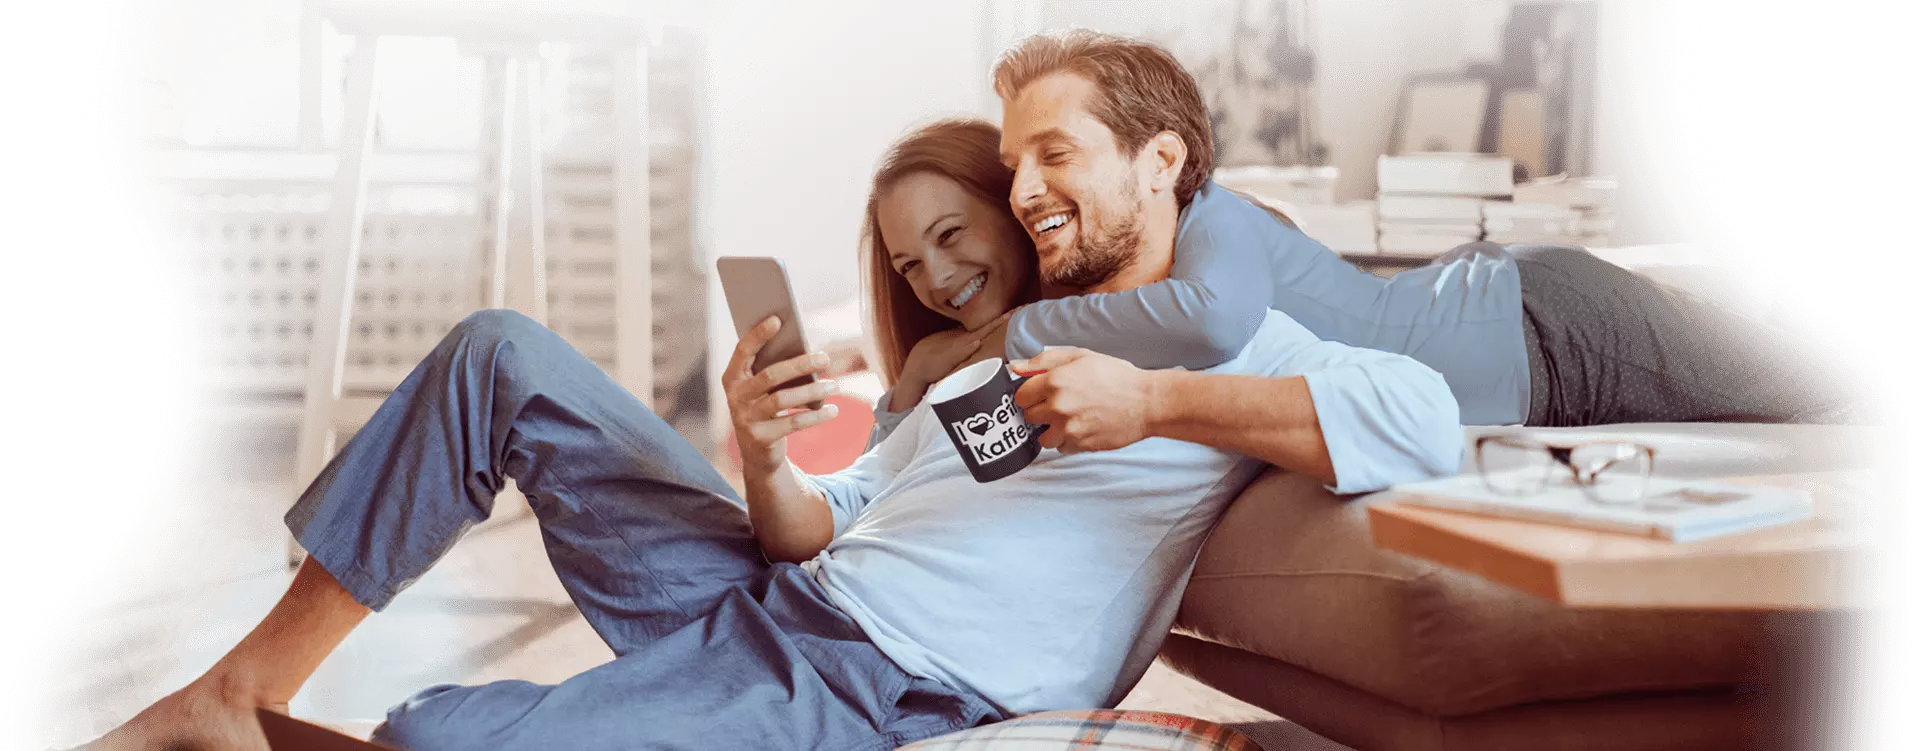 Ein Mann und eine Dame schauen gemeinsam auf ein Handy und lachen dabei